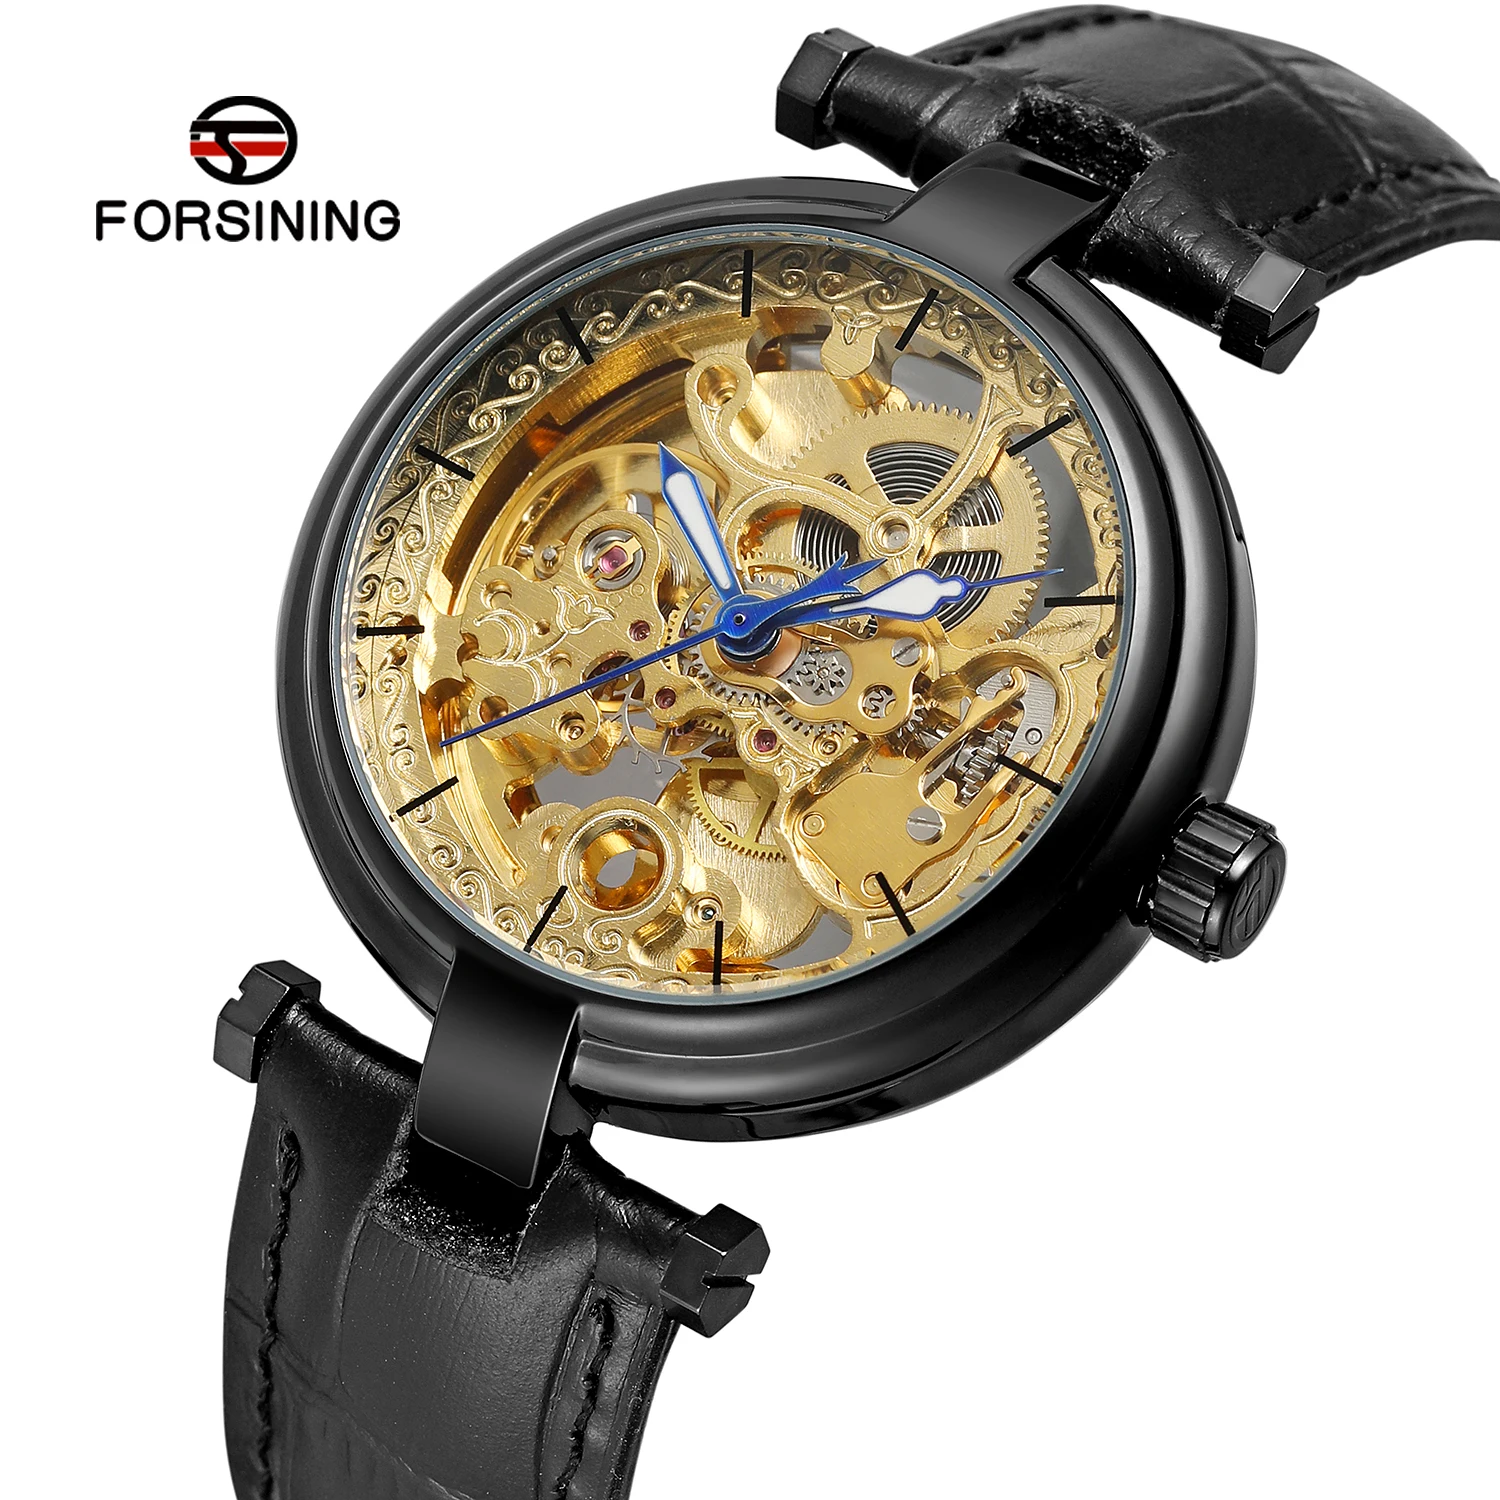 

Forsining Retro Men Transparent Automatic Wrist Watch Unique Design Hollow Out Skeleton Leather Mechanical Clock Relojes Hombres